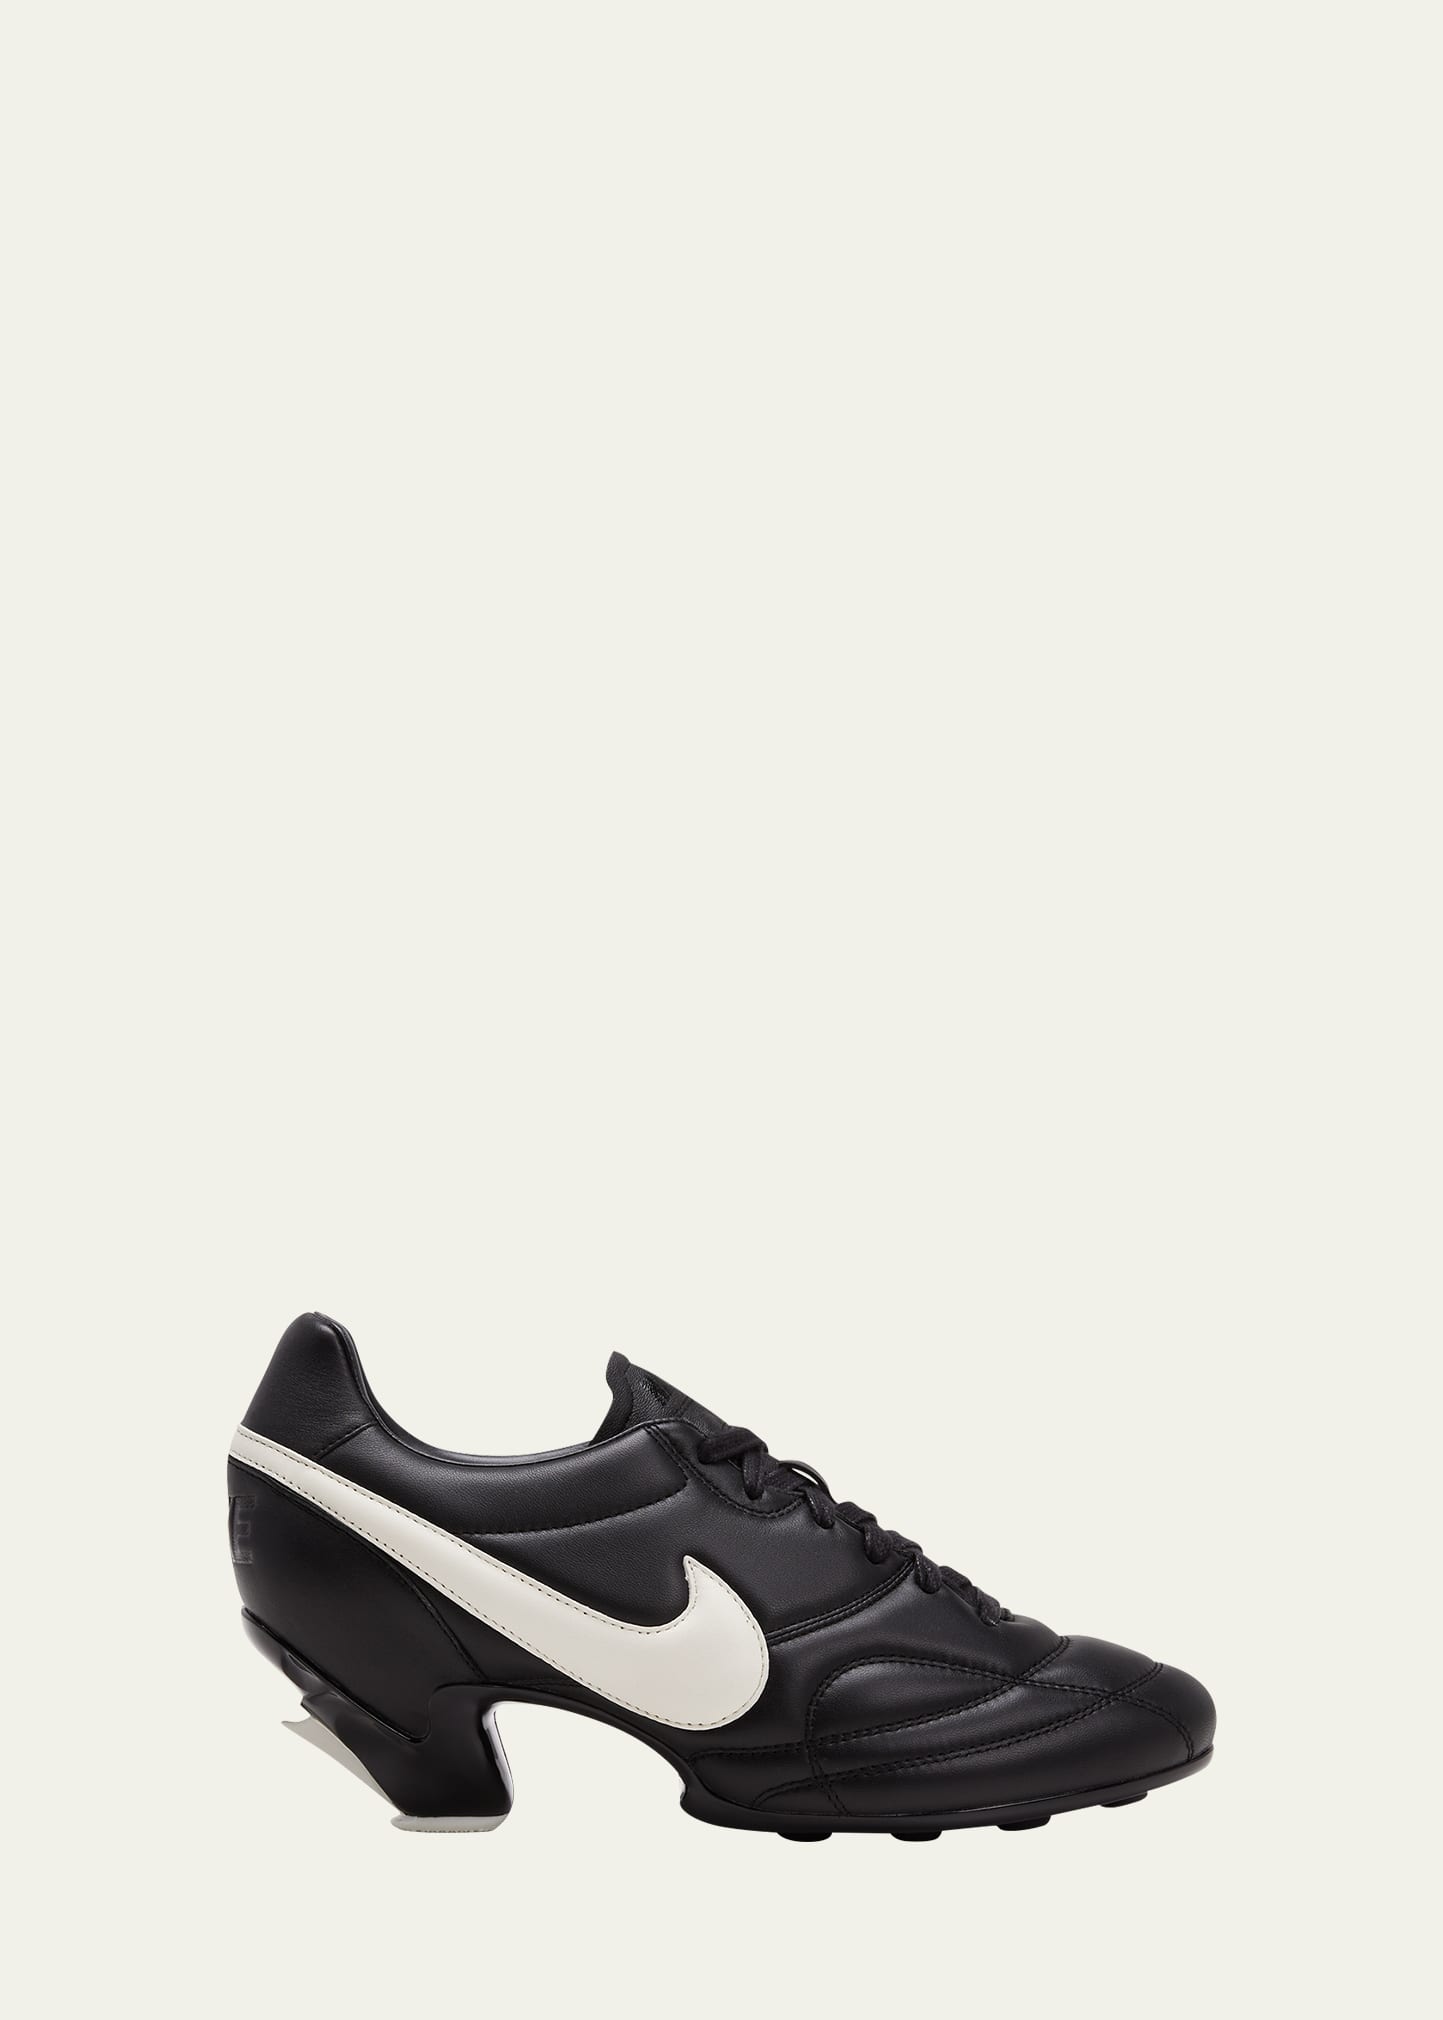 Comme Des Garcons x Nike x Bicolor Leather Sneaker Pumps - Goodman